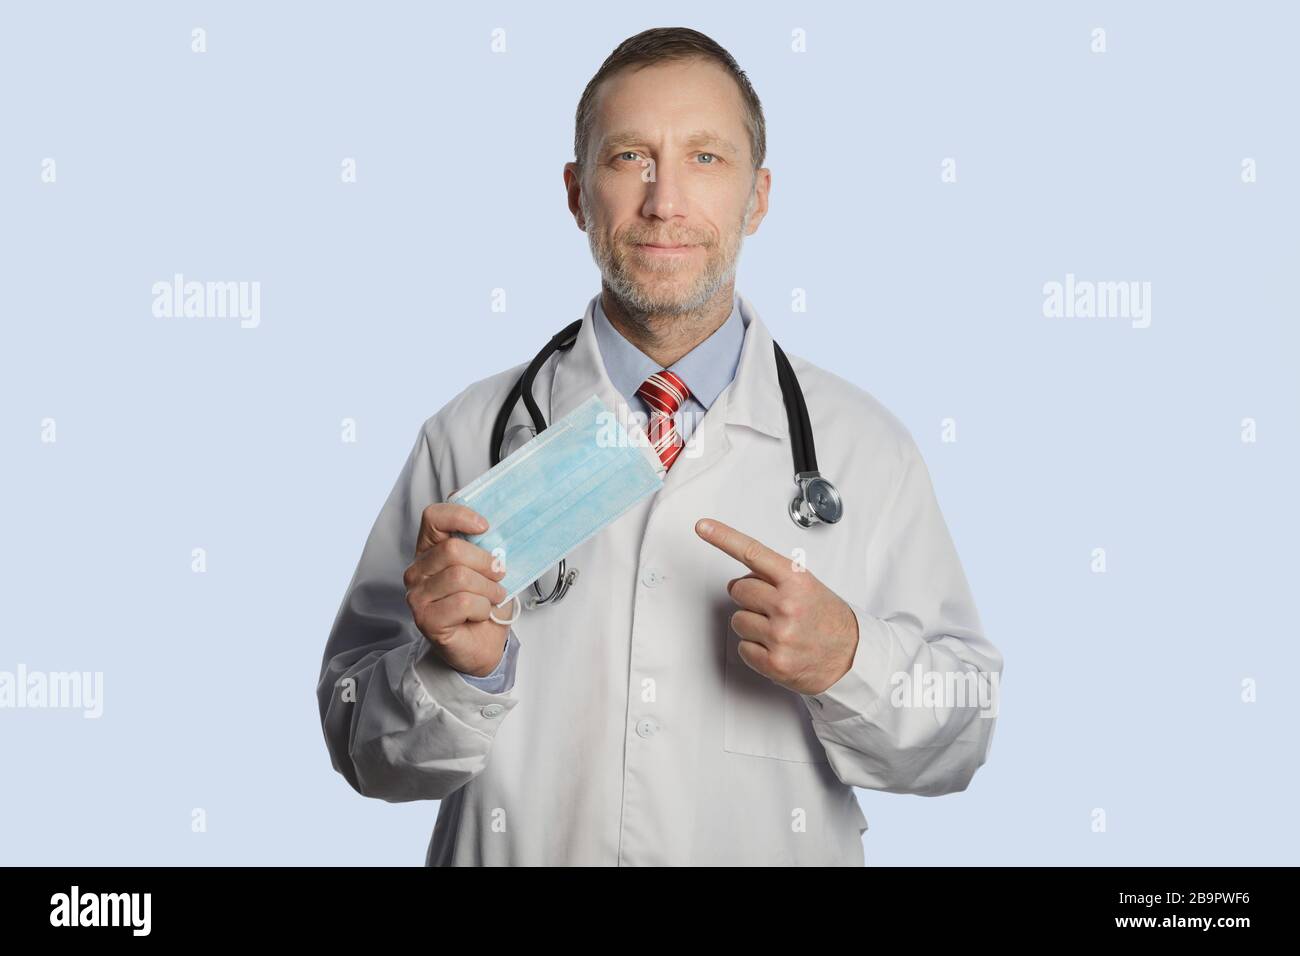 Ein Arzt in einem medizinischen Mantel und ein Stethoskop auf seinen Schultern zeigt eine medizinische Maske Stockfoto